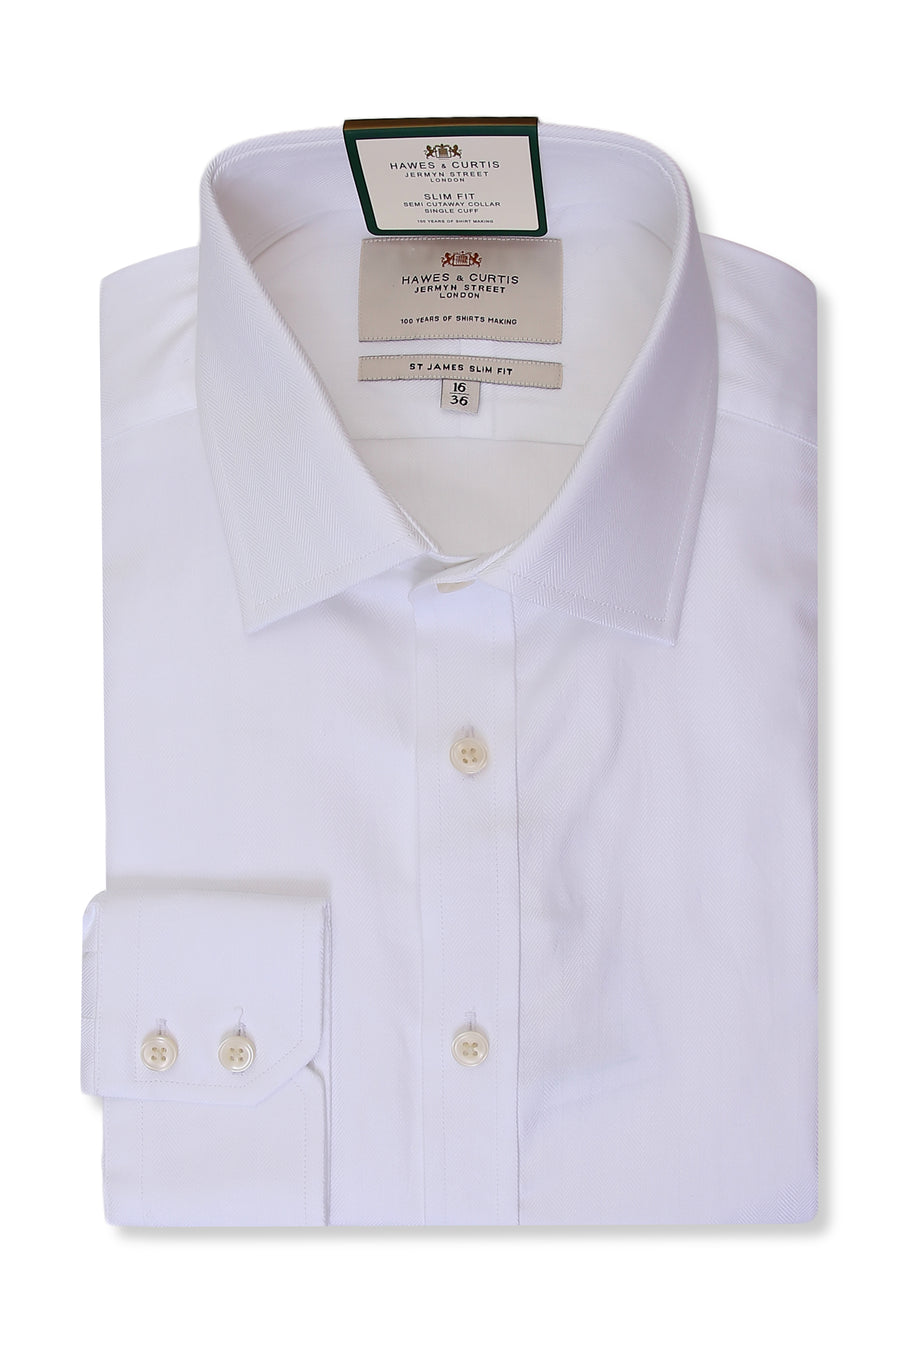 H & C Mens L/S Heringbons Formal Shirt SSPGA922